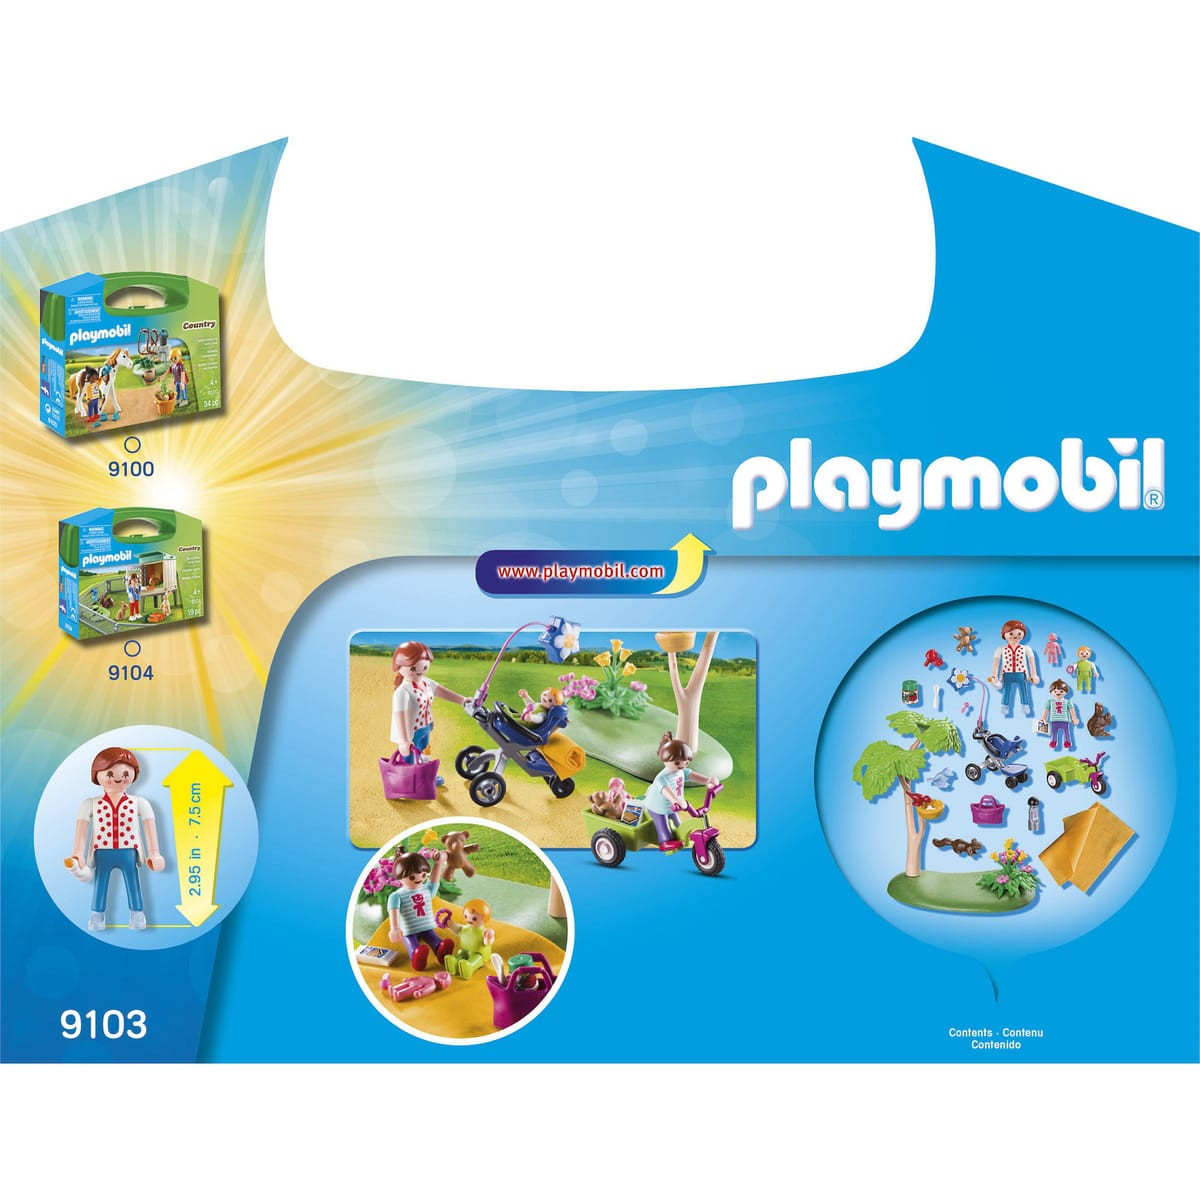 Valisette magasin playmobil - Playmobil - 24 mois